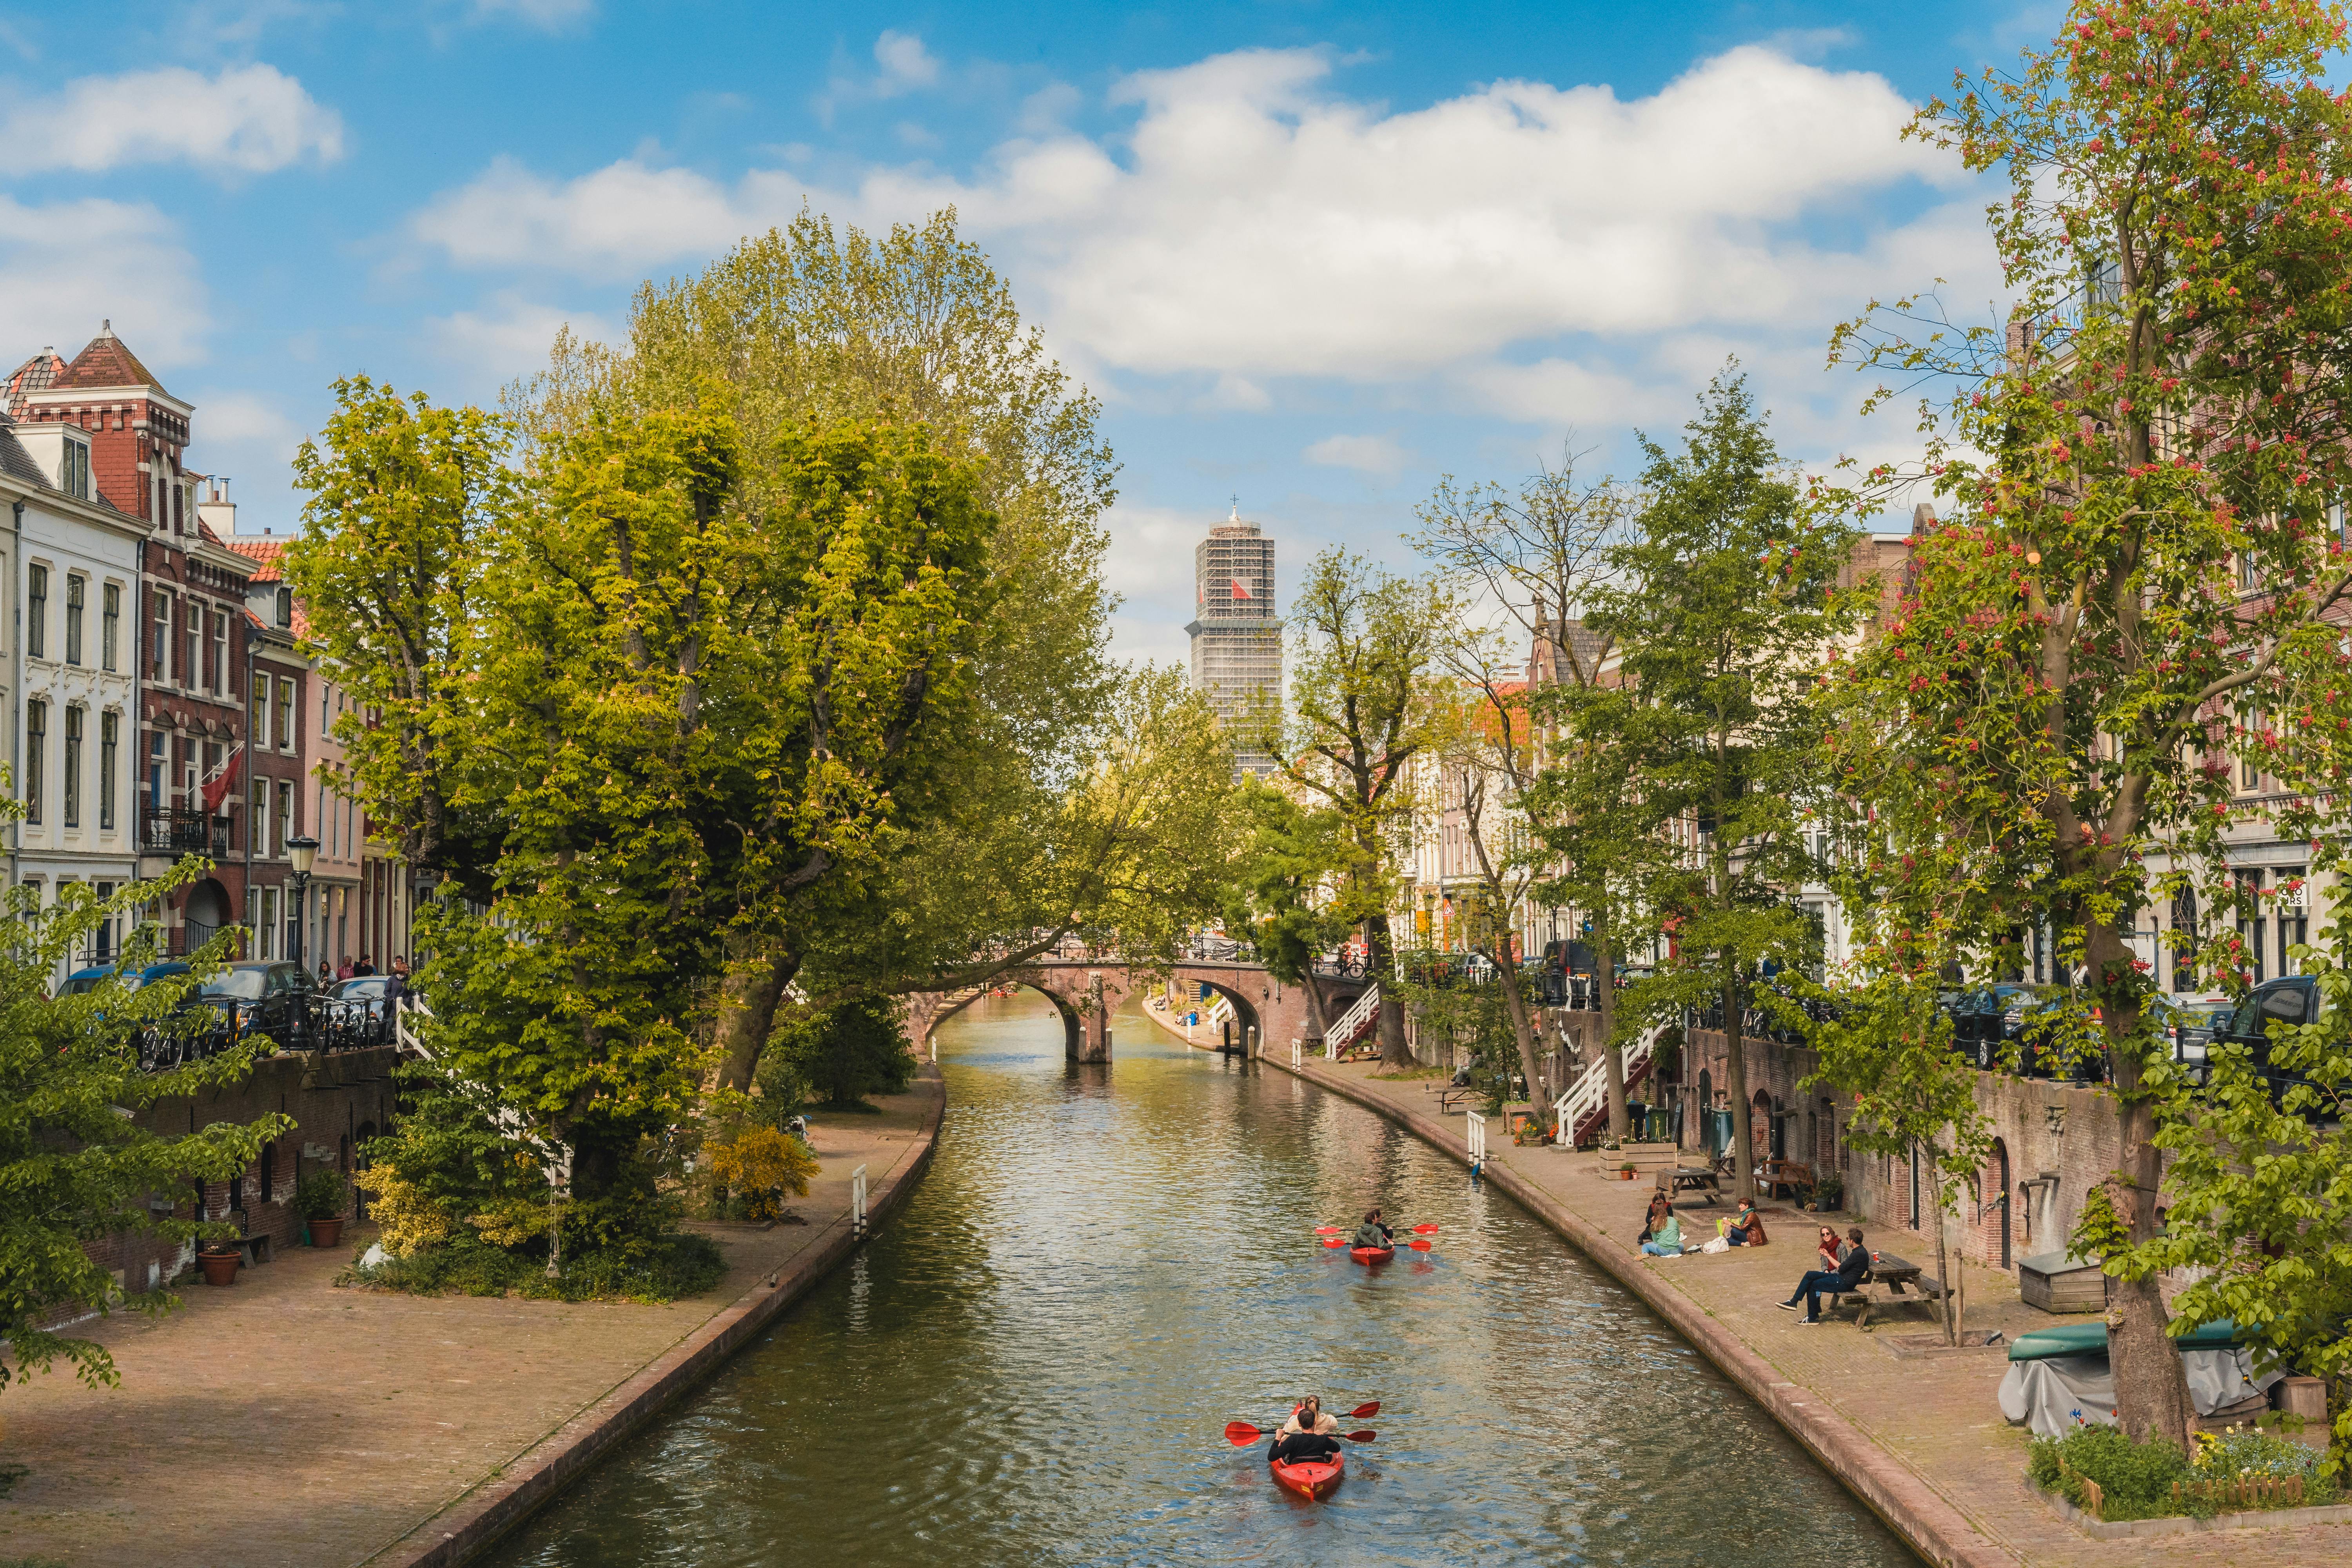 1.5-hour Utrecht canal cruise